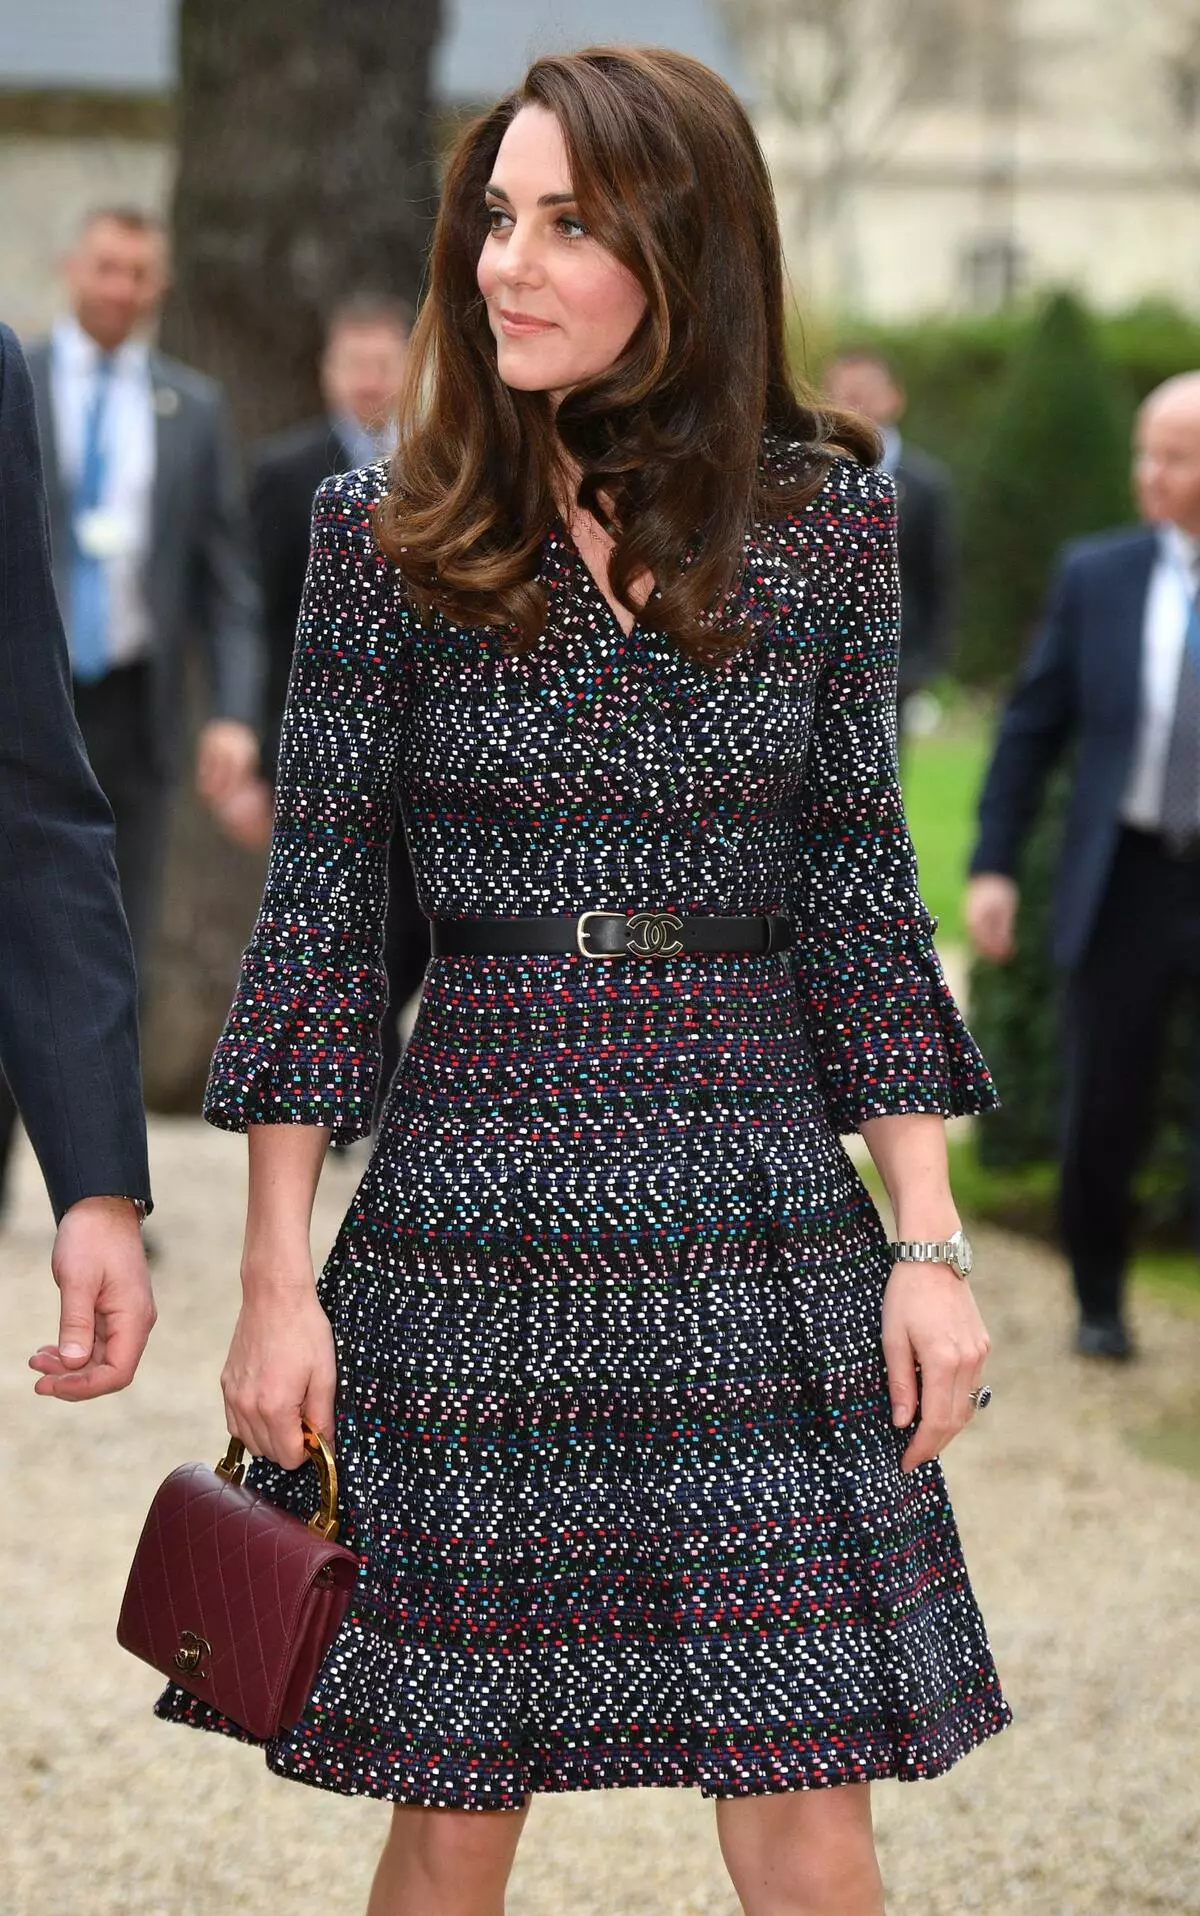 Pendant plusieurs mois, Megan Marcle a passé 4 fois plus sur des vêtements que Kate Middleton pour l'année 143522_2